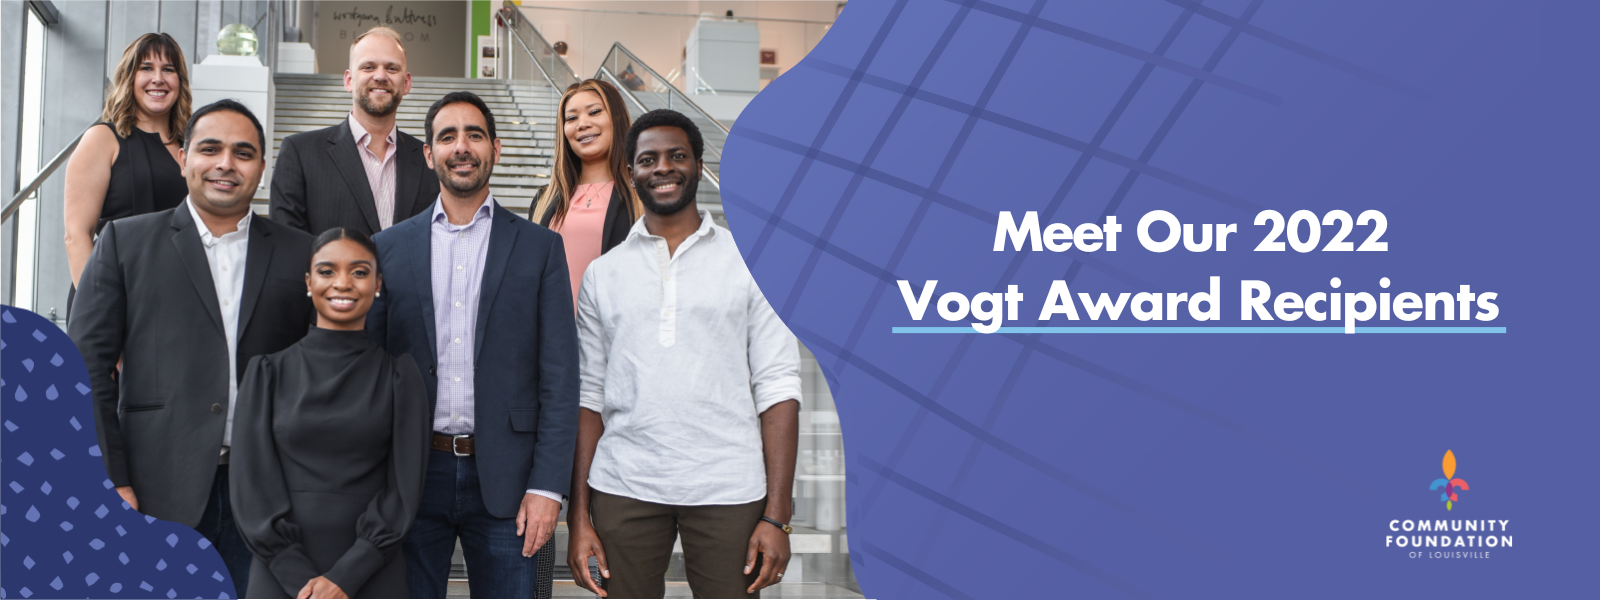 Meet our 2022 Vogt Award Recipients